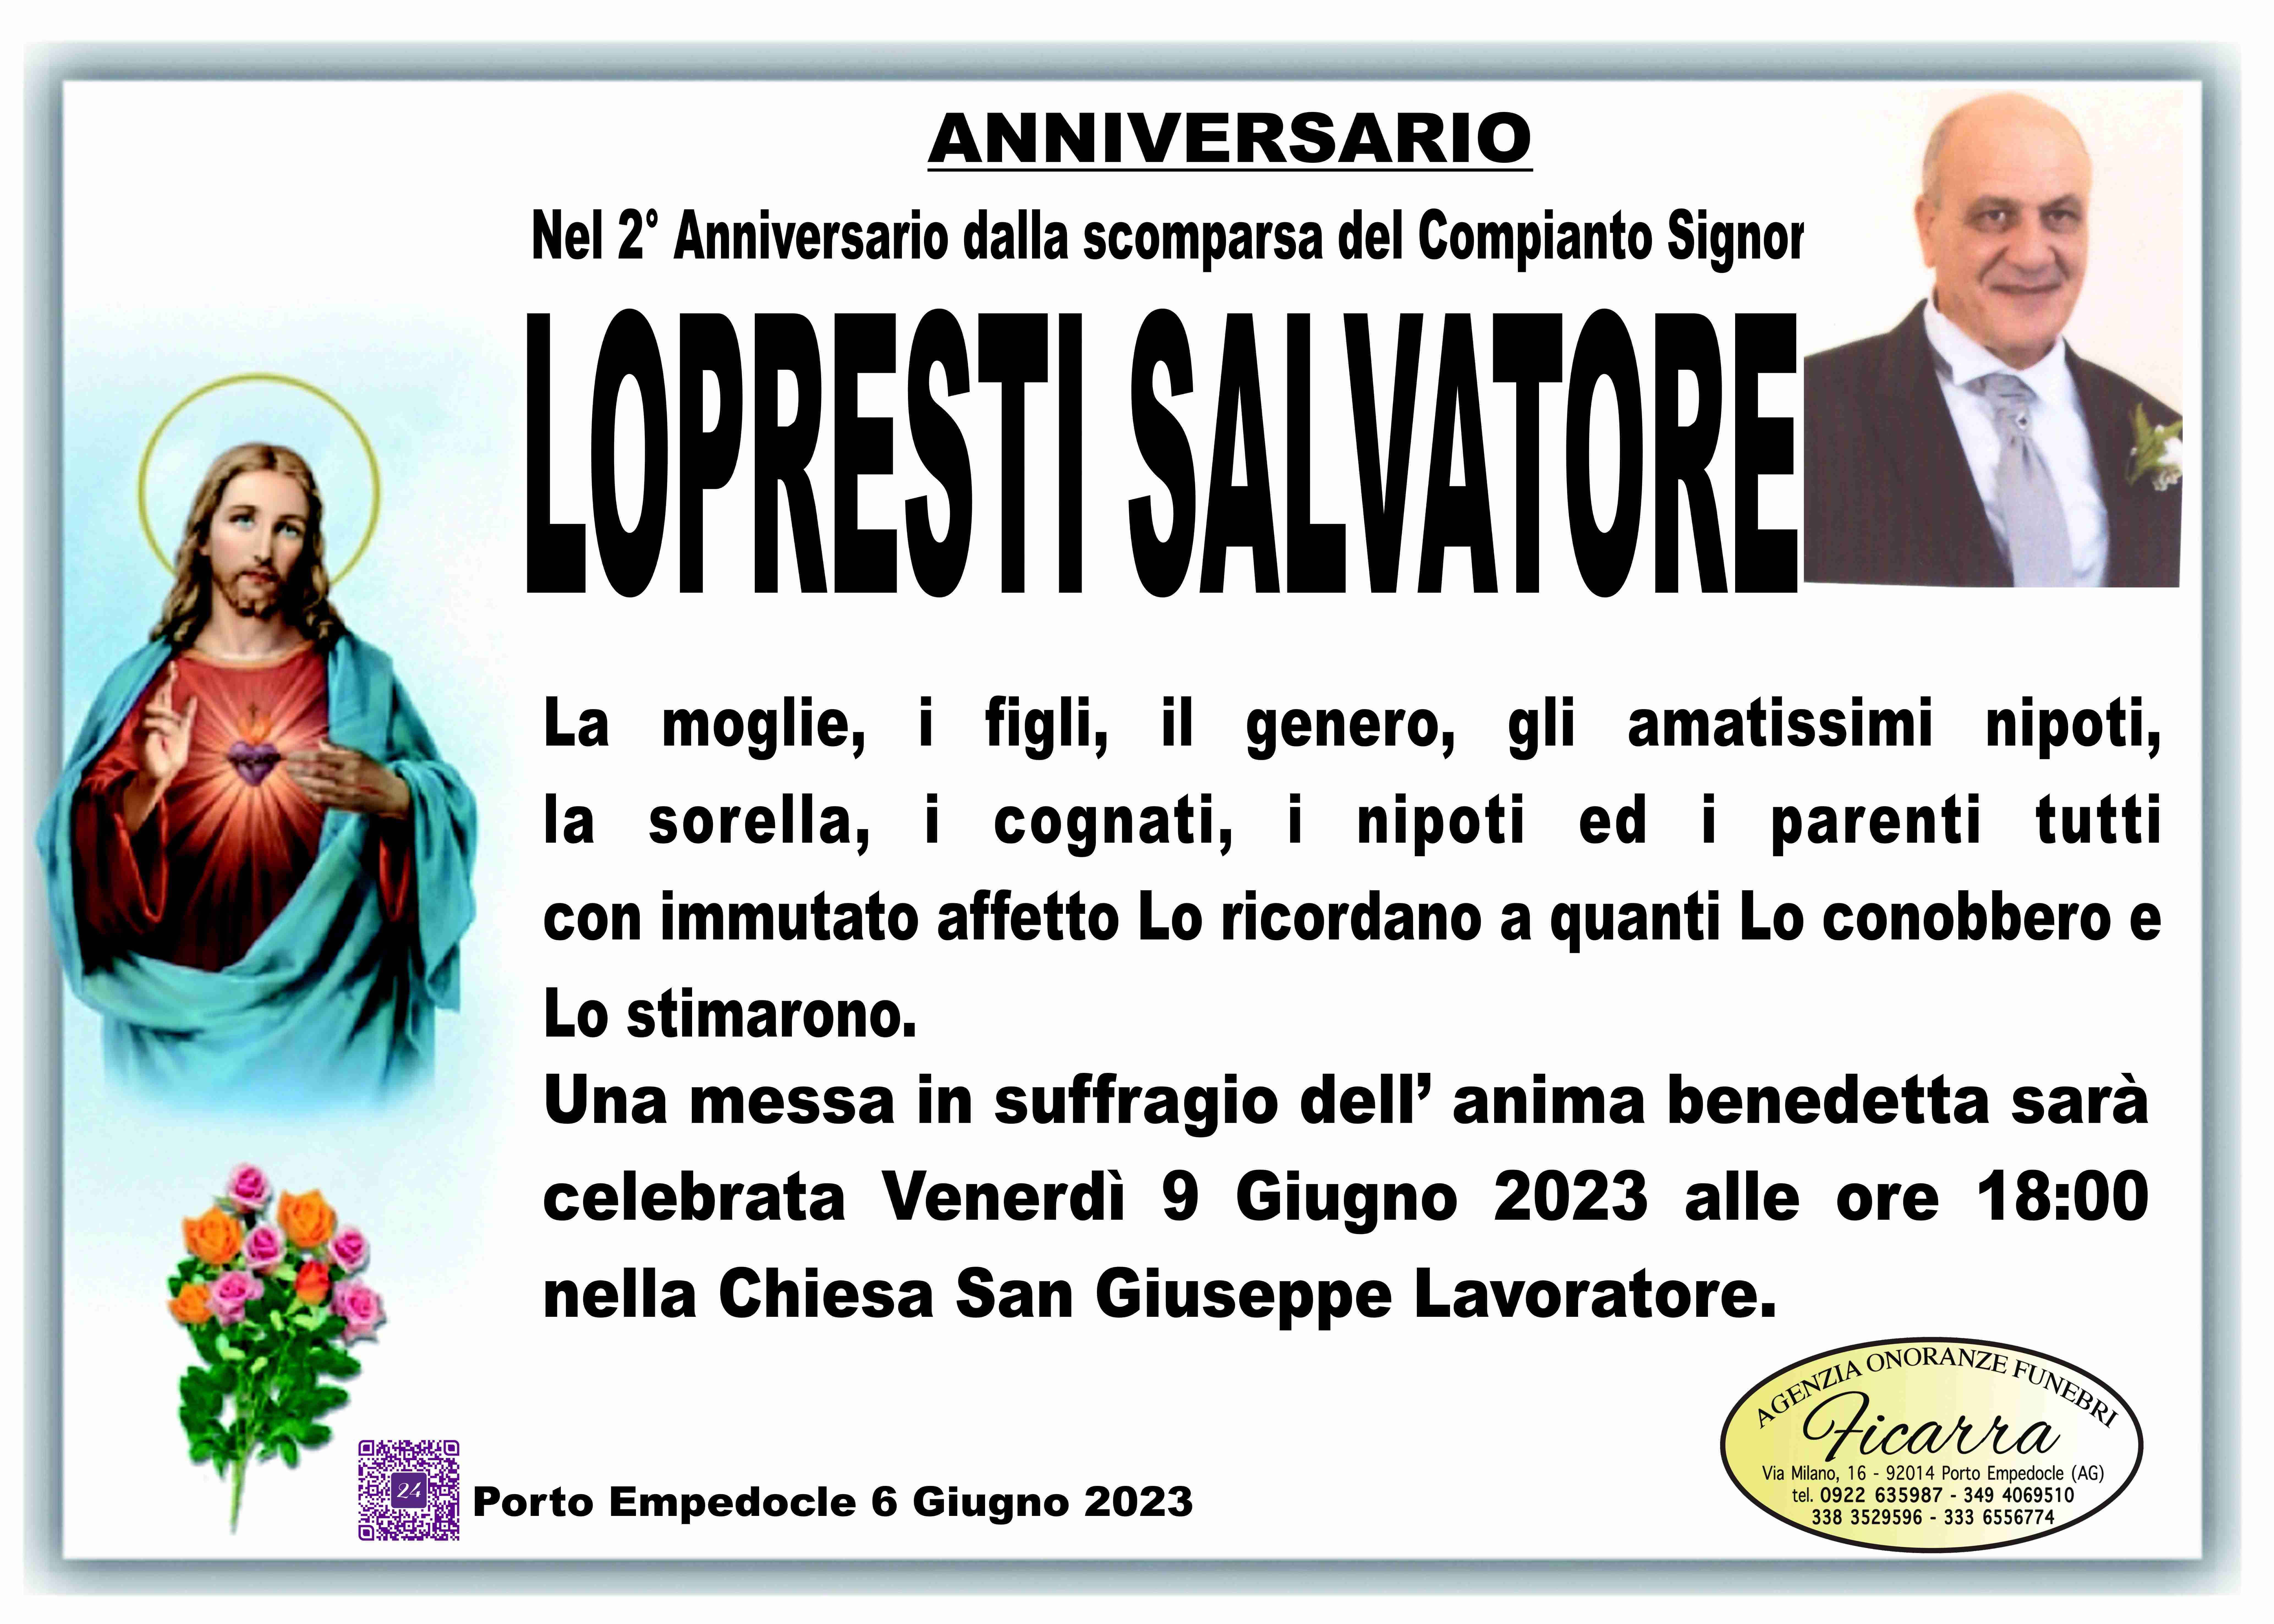 Salvatore Lopresti